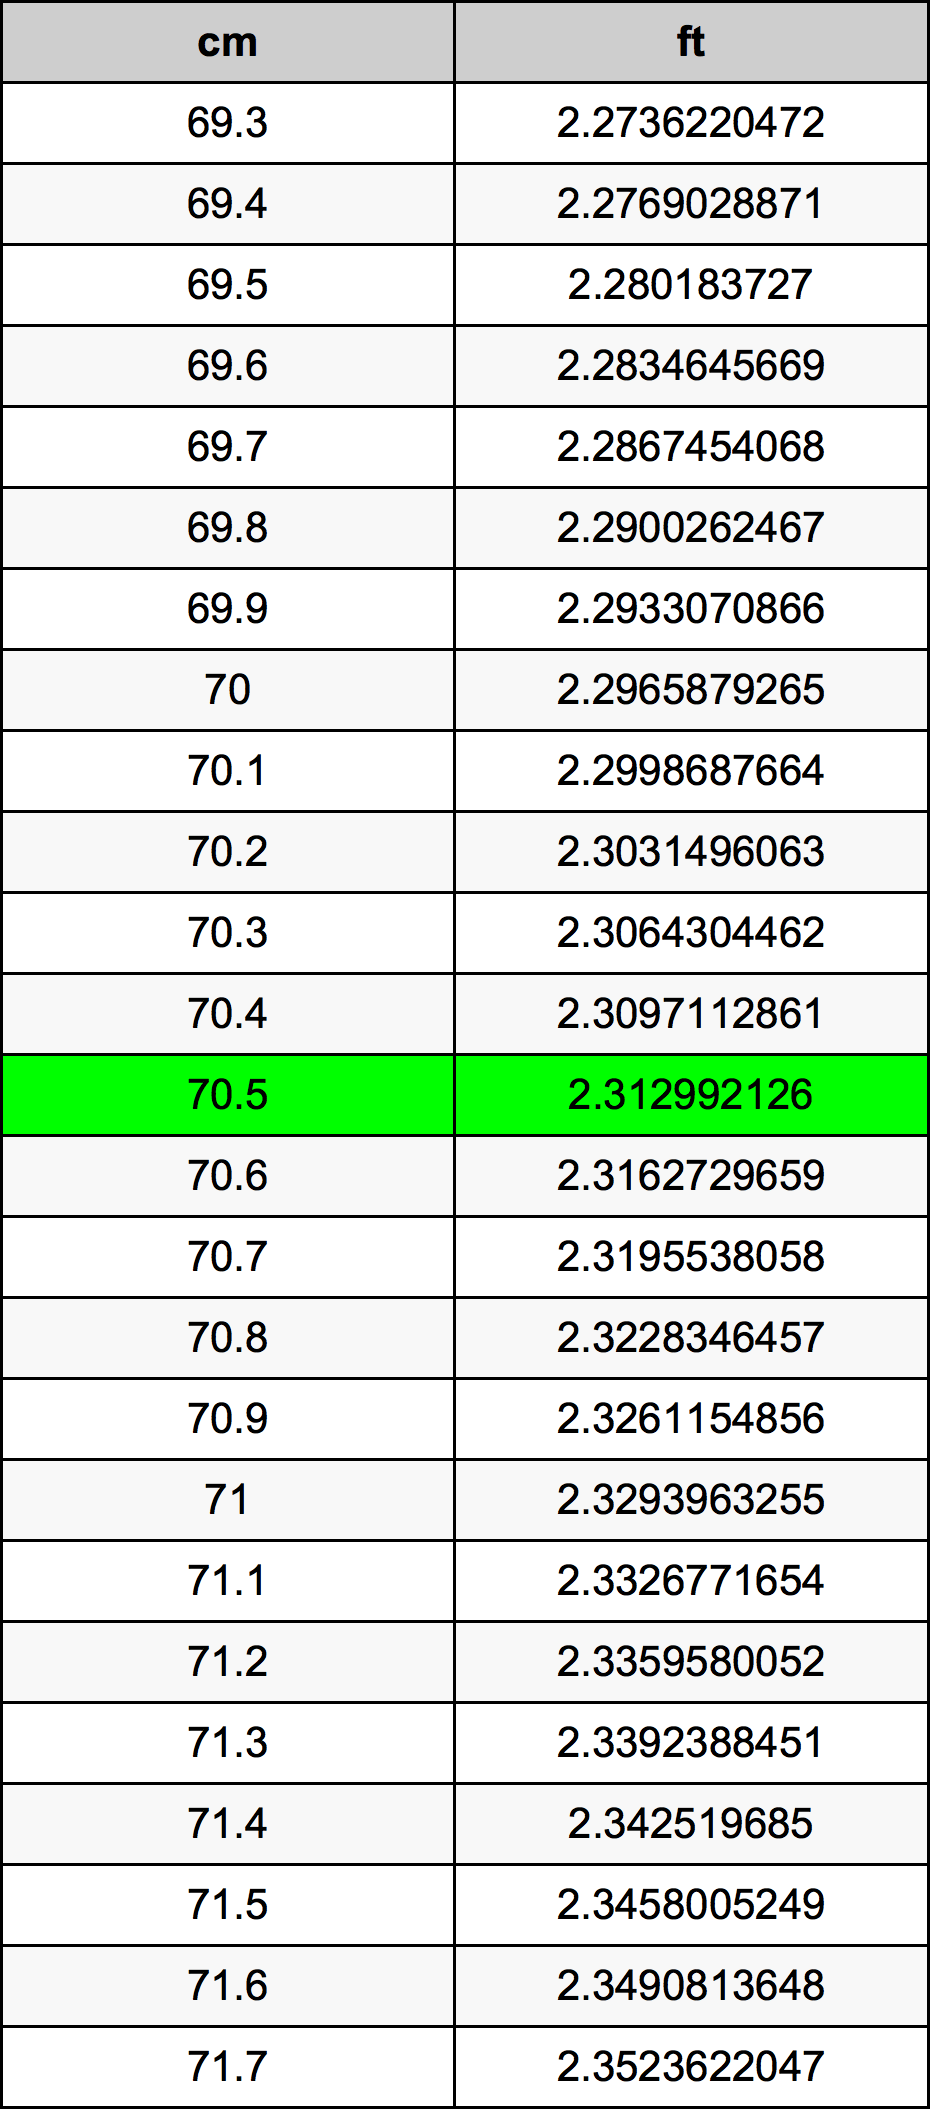 70.5 Centiméter átszámítási táblázat